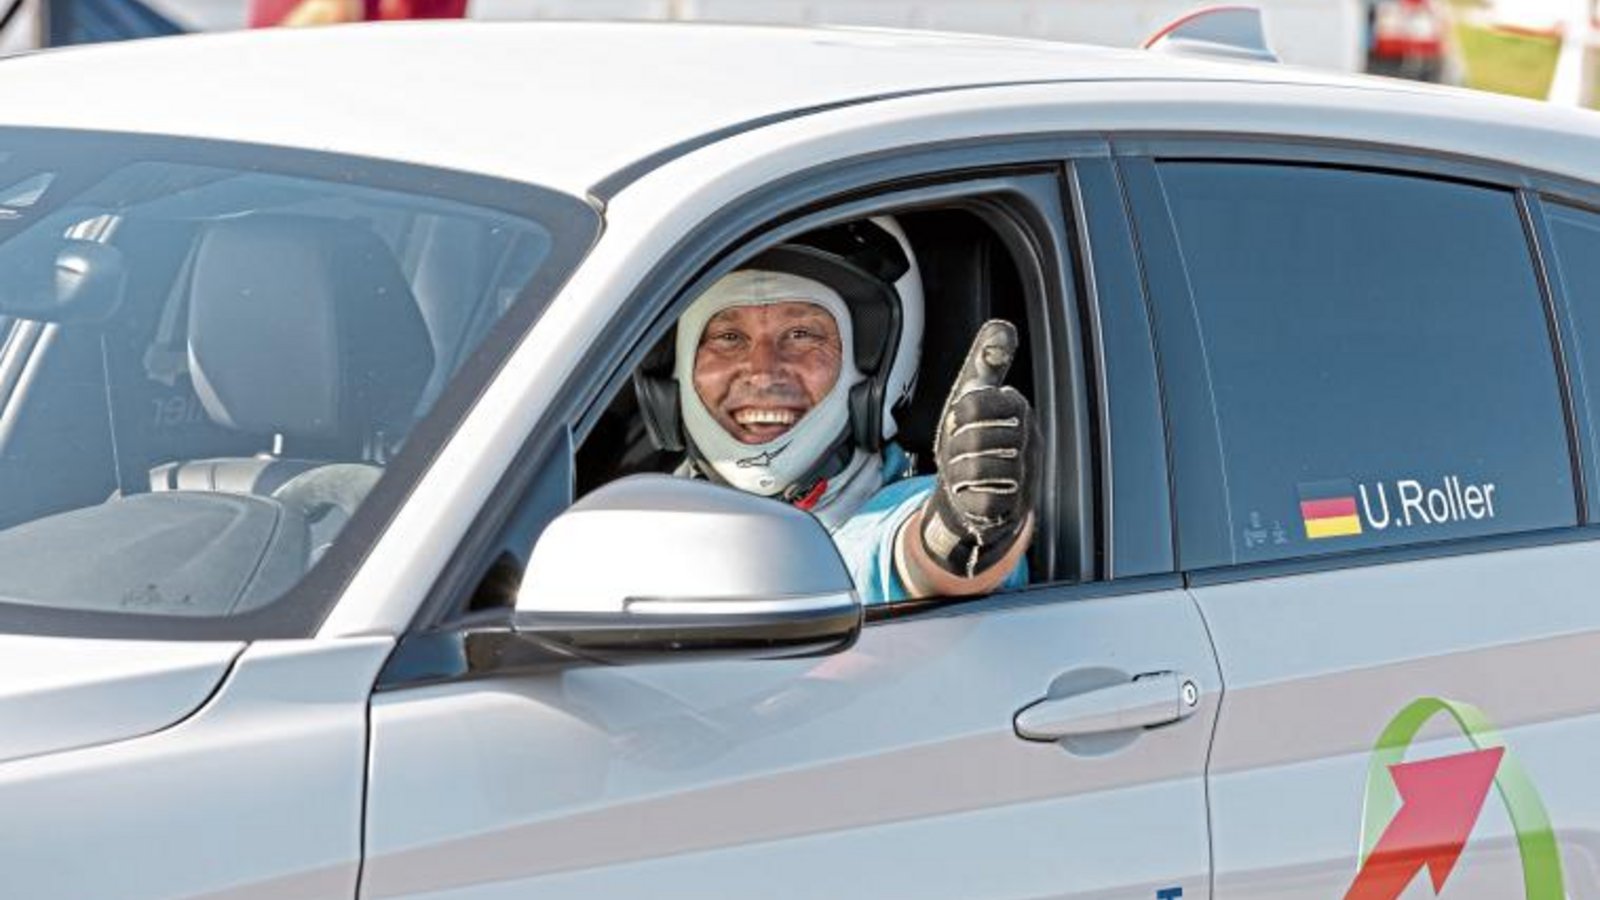 Udo Roller freut sich über den Tagessieg beim Automobilslalom in Nussloch, der ihm vorzeitig den Titel im Rhein-Neckar-Pokal beschert.  Foto: privat